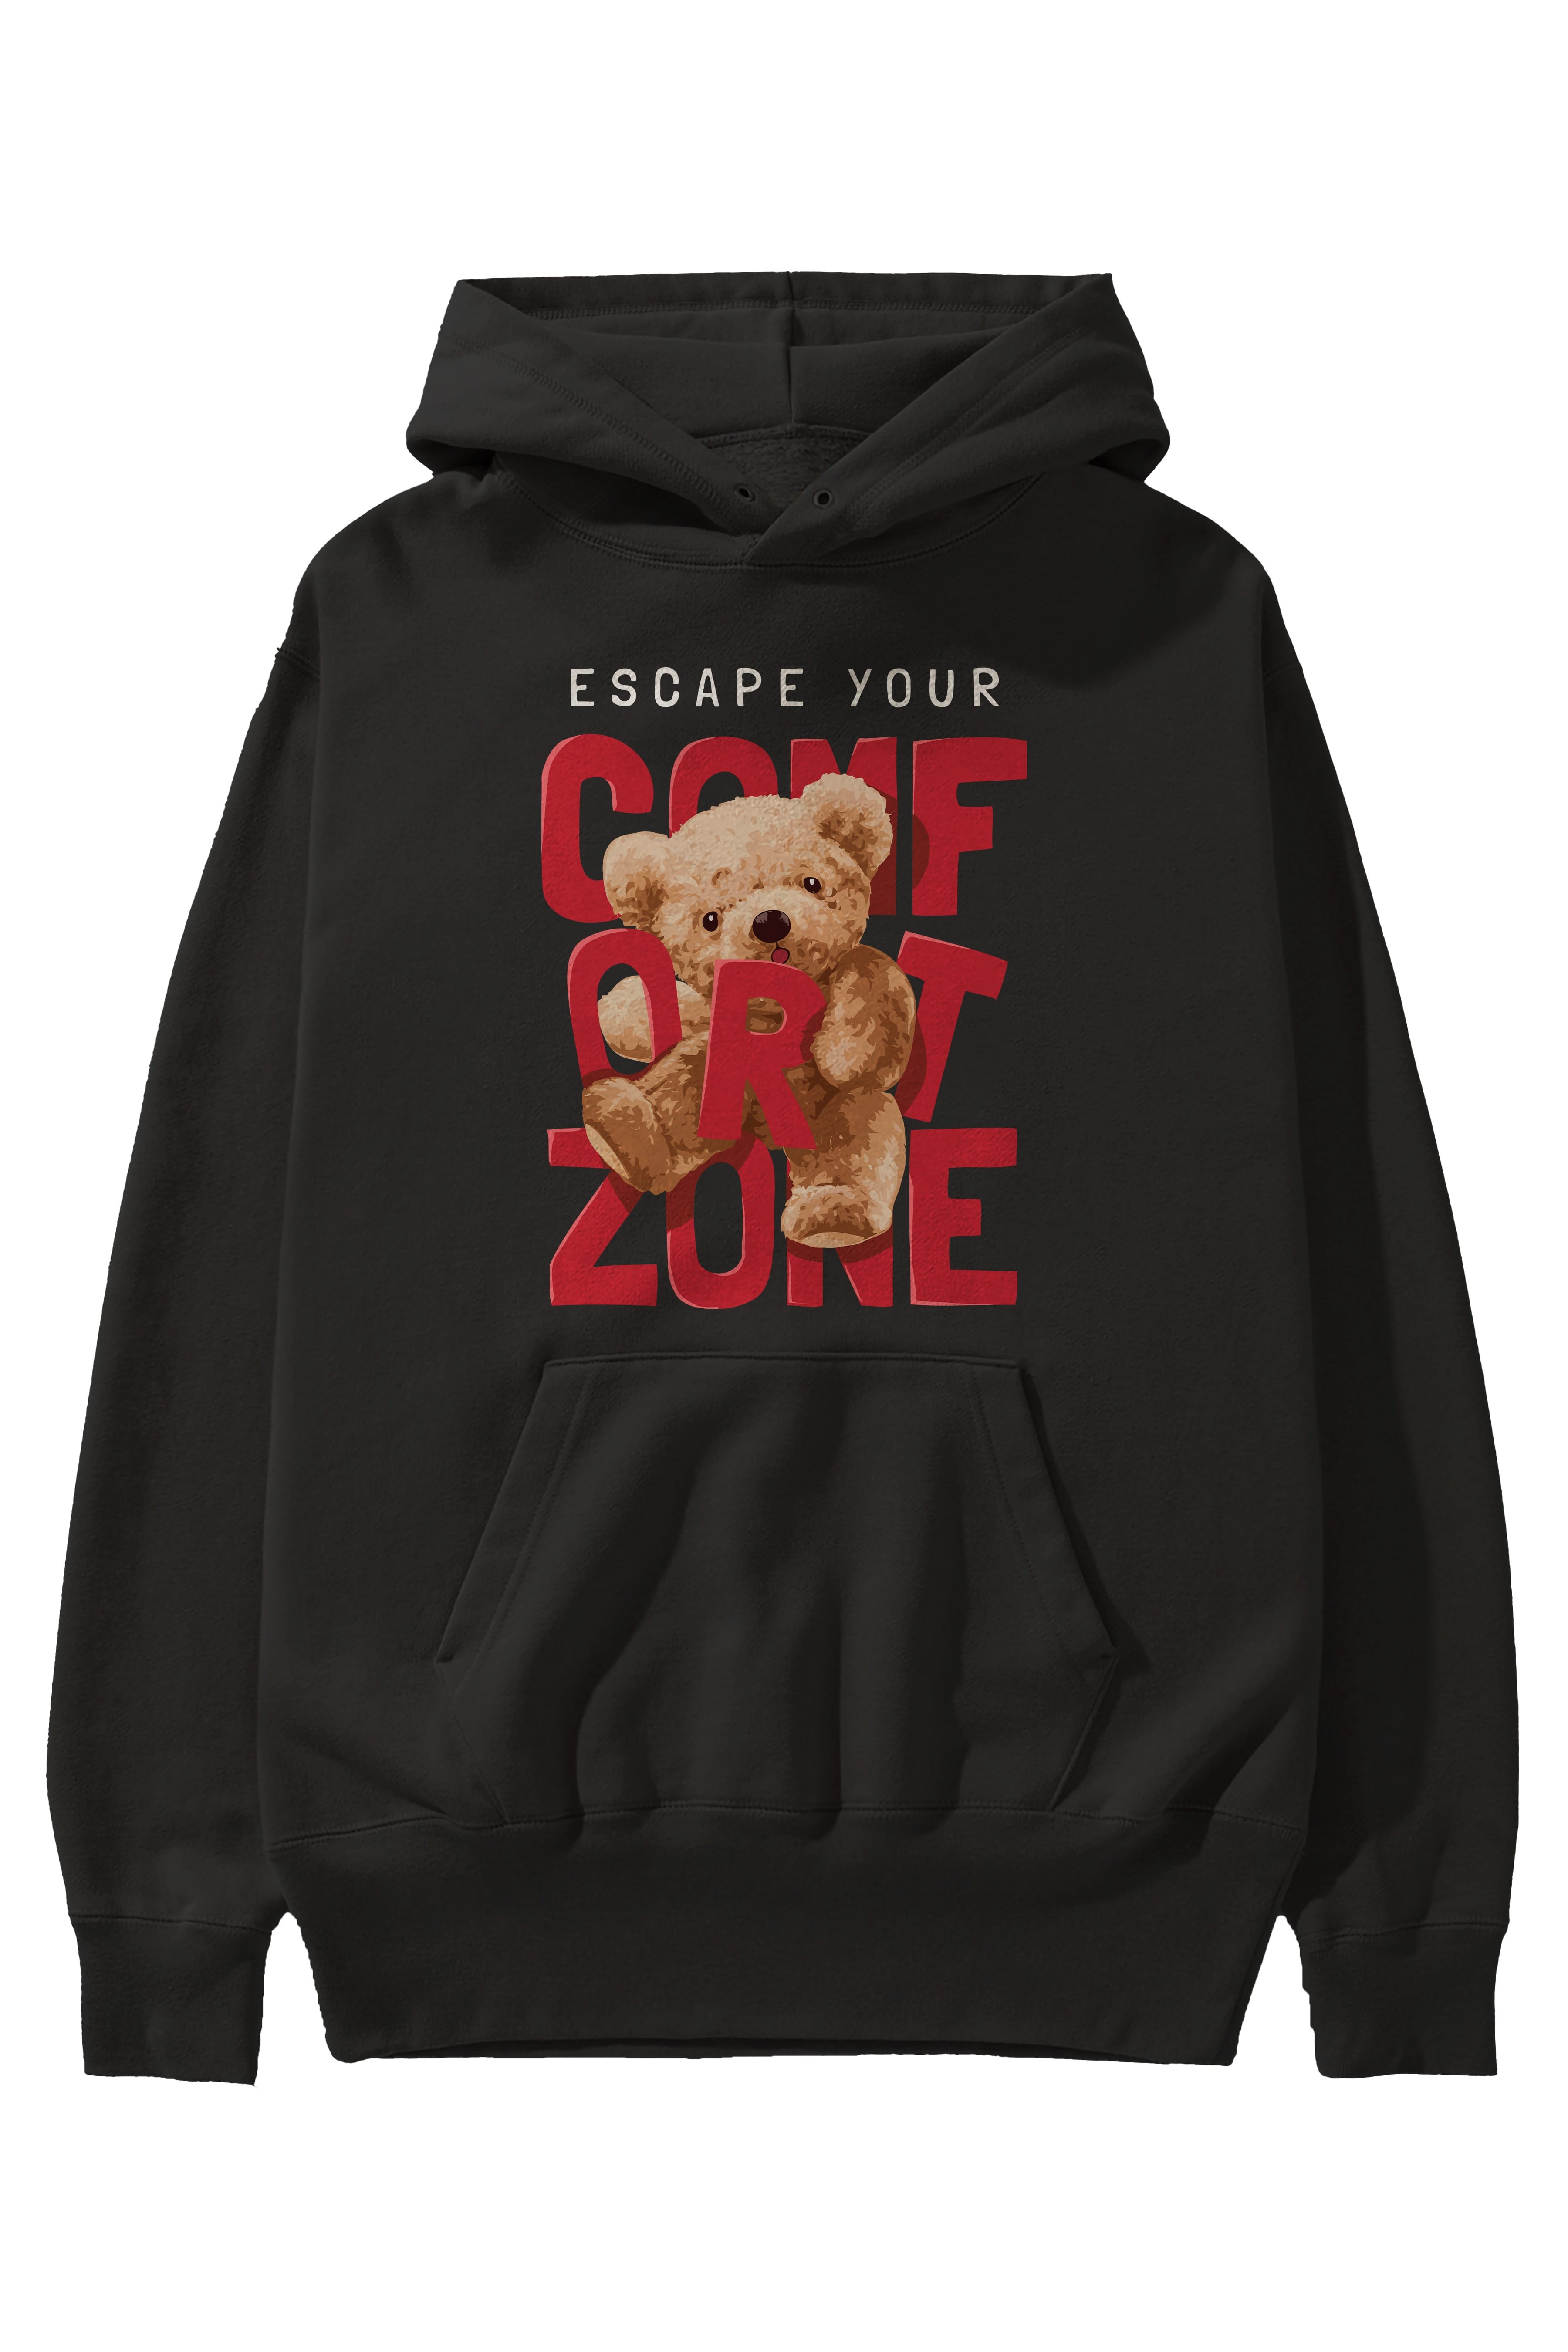 Teddy Bear Escape Comfort Zone Ön Baskılı Hoodie Oversize Kapüşonlu Sweatshirt Erkek Kadın Unisex